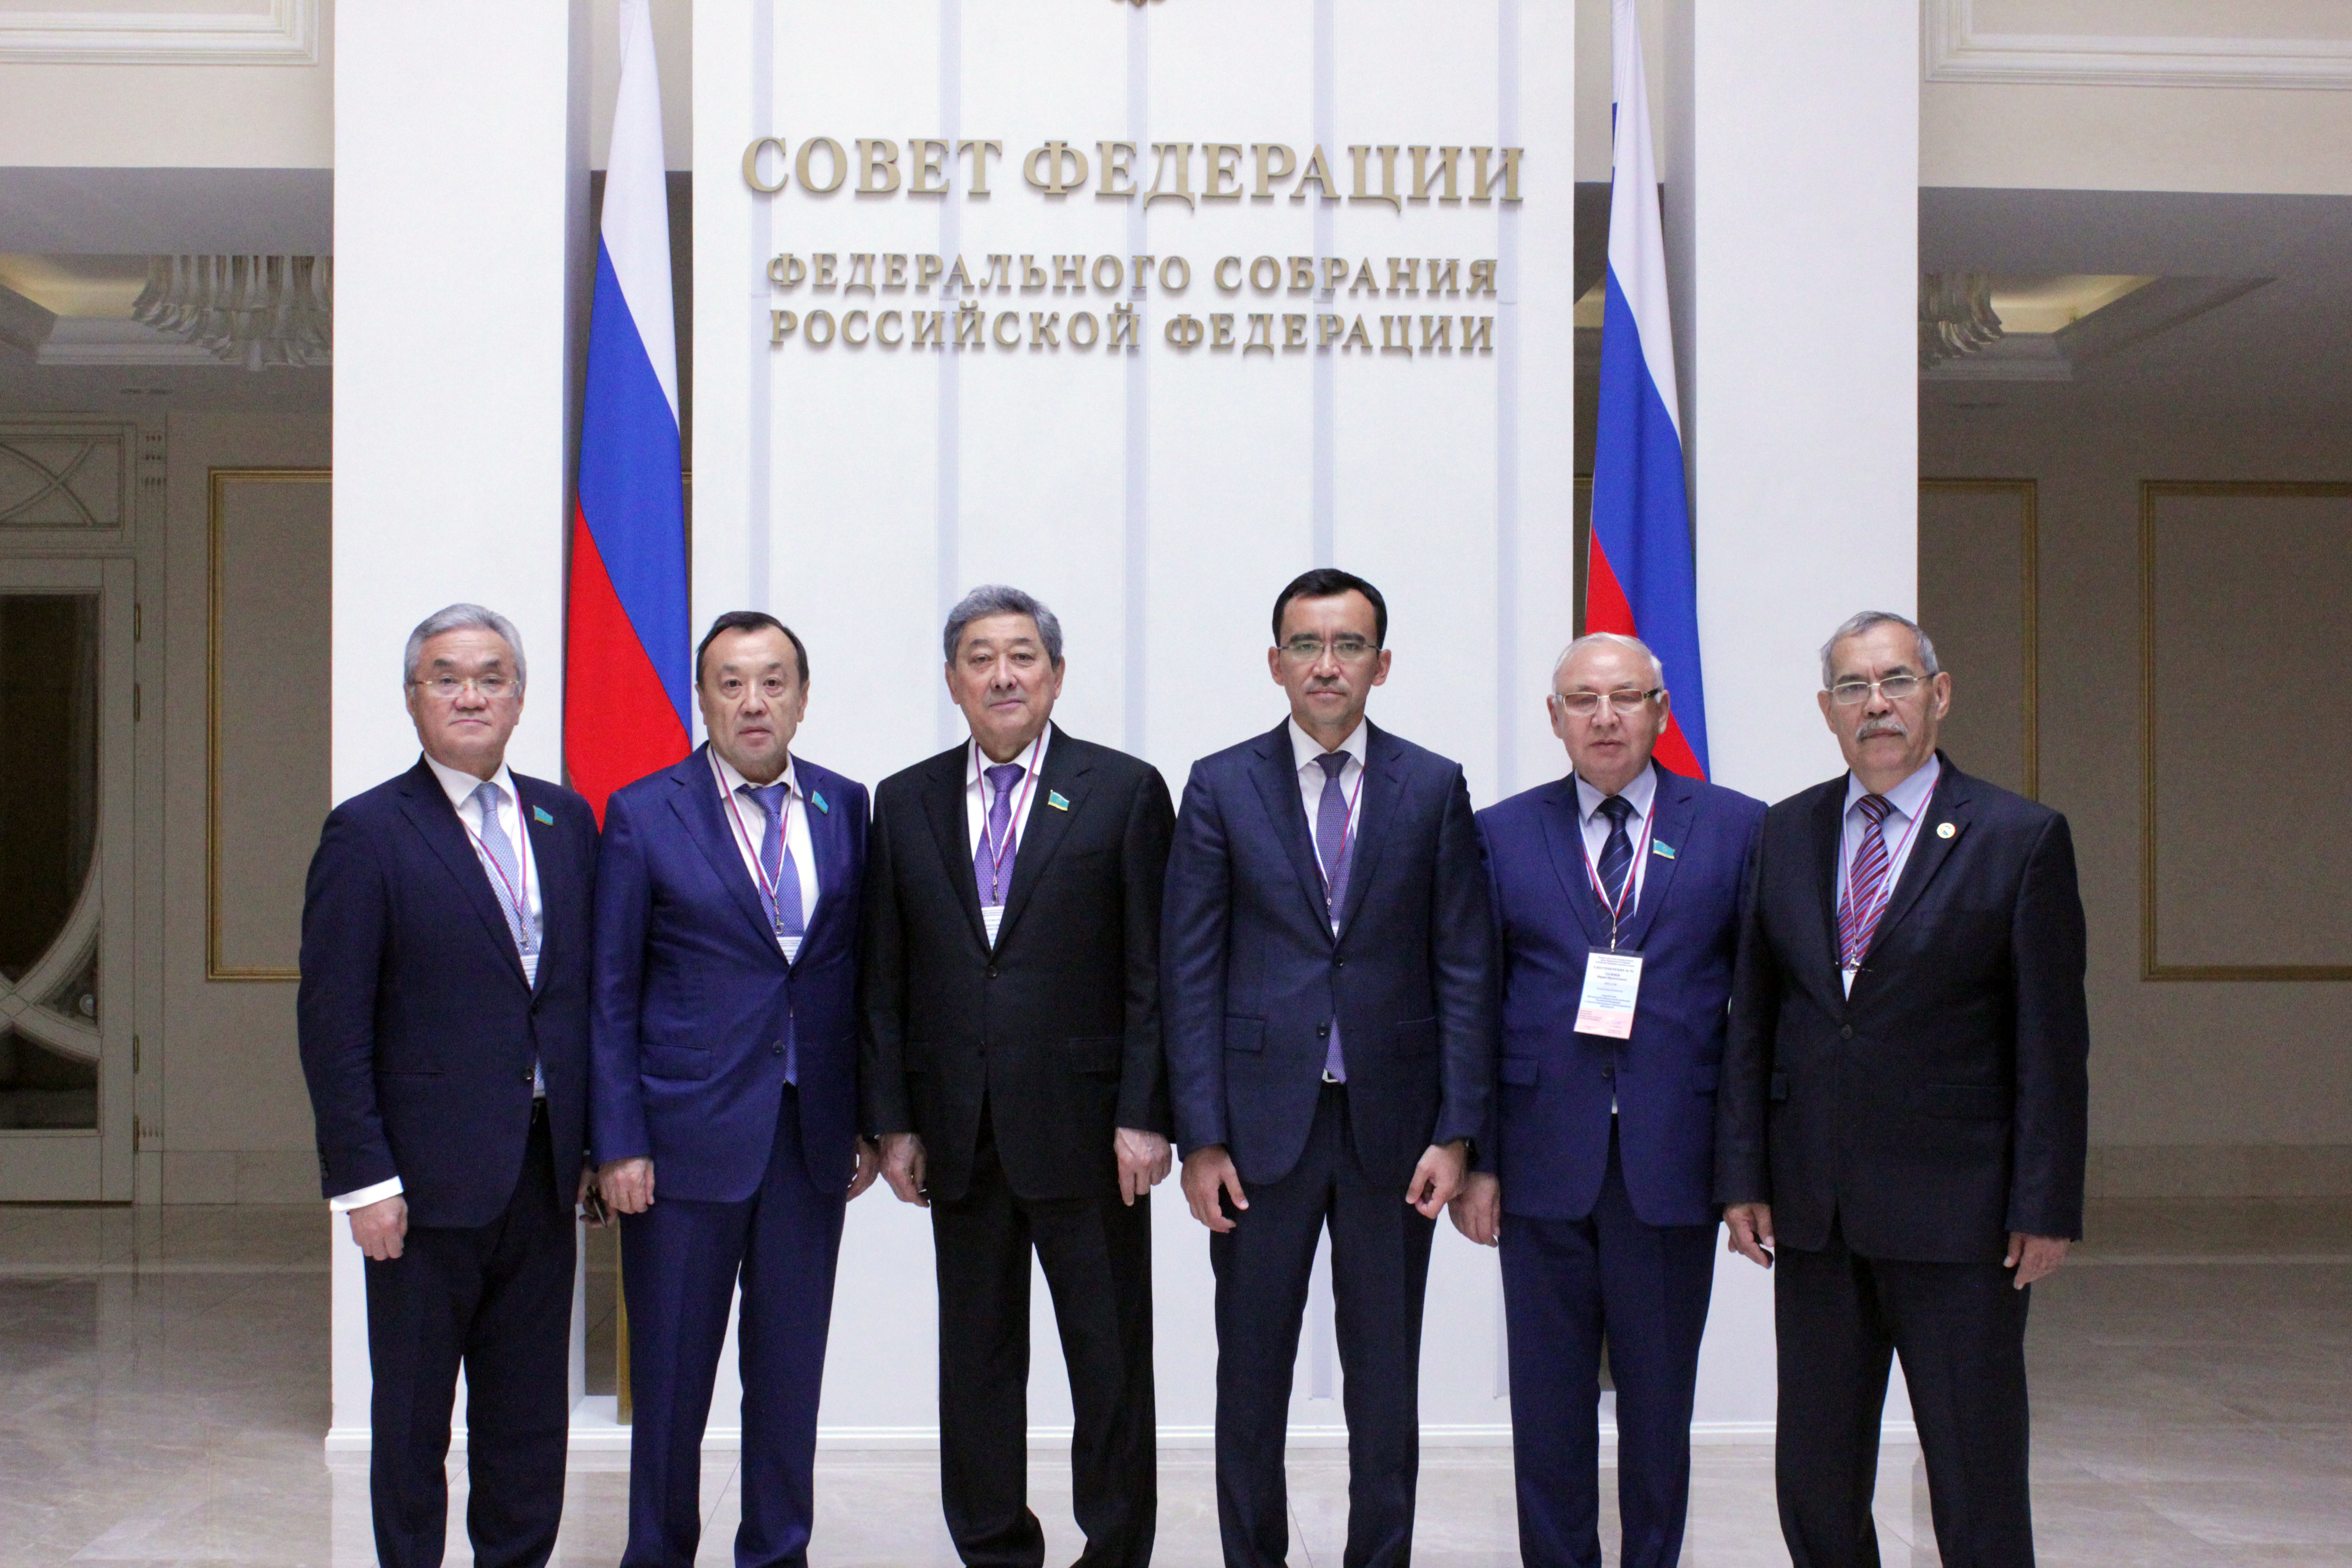 Участие на выборах депутатов в  Государственную Думу Российской Федерации в качестве наблюдателя от Парламента Республики Казахстан.